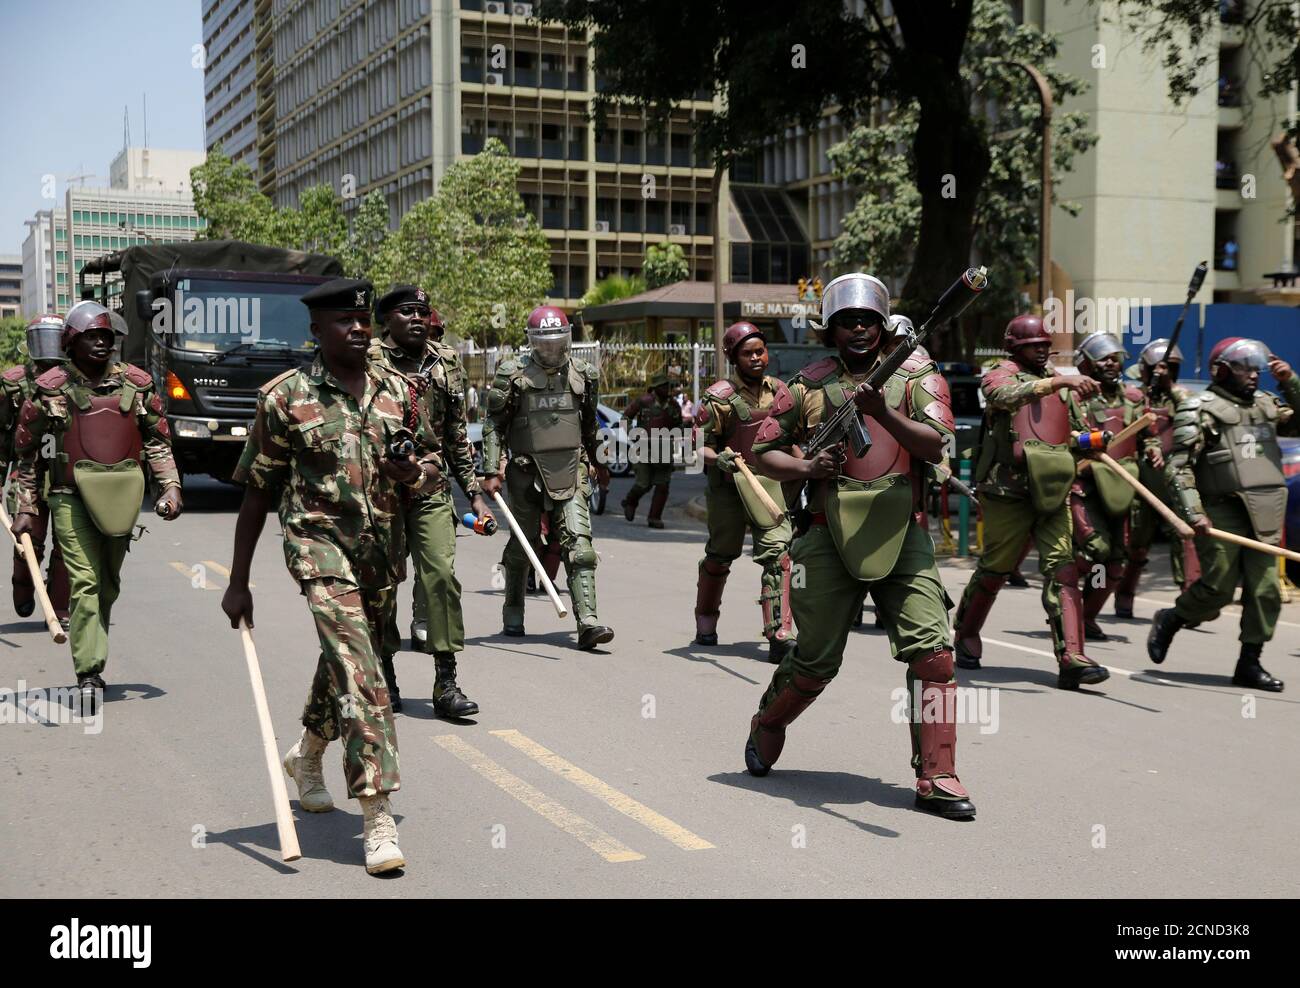 Los policías antidisturbios caminan a lo largo de una calle en un intento de dispersar a los partidarios de la coalición de la oposición keniata National Super Alliance (NASA), durante una protesta a lo largo de una calle en Nairobi, Kenia, el 16 de octubre de 2017. REUTERS/Thomas Mukoya Foto de stock